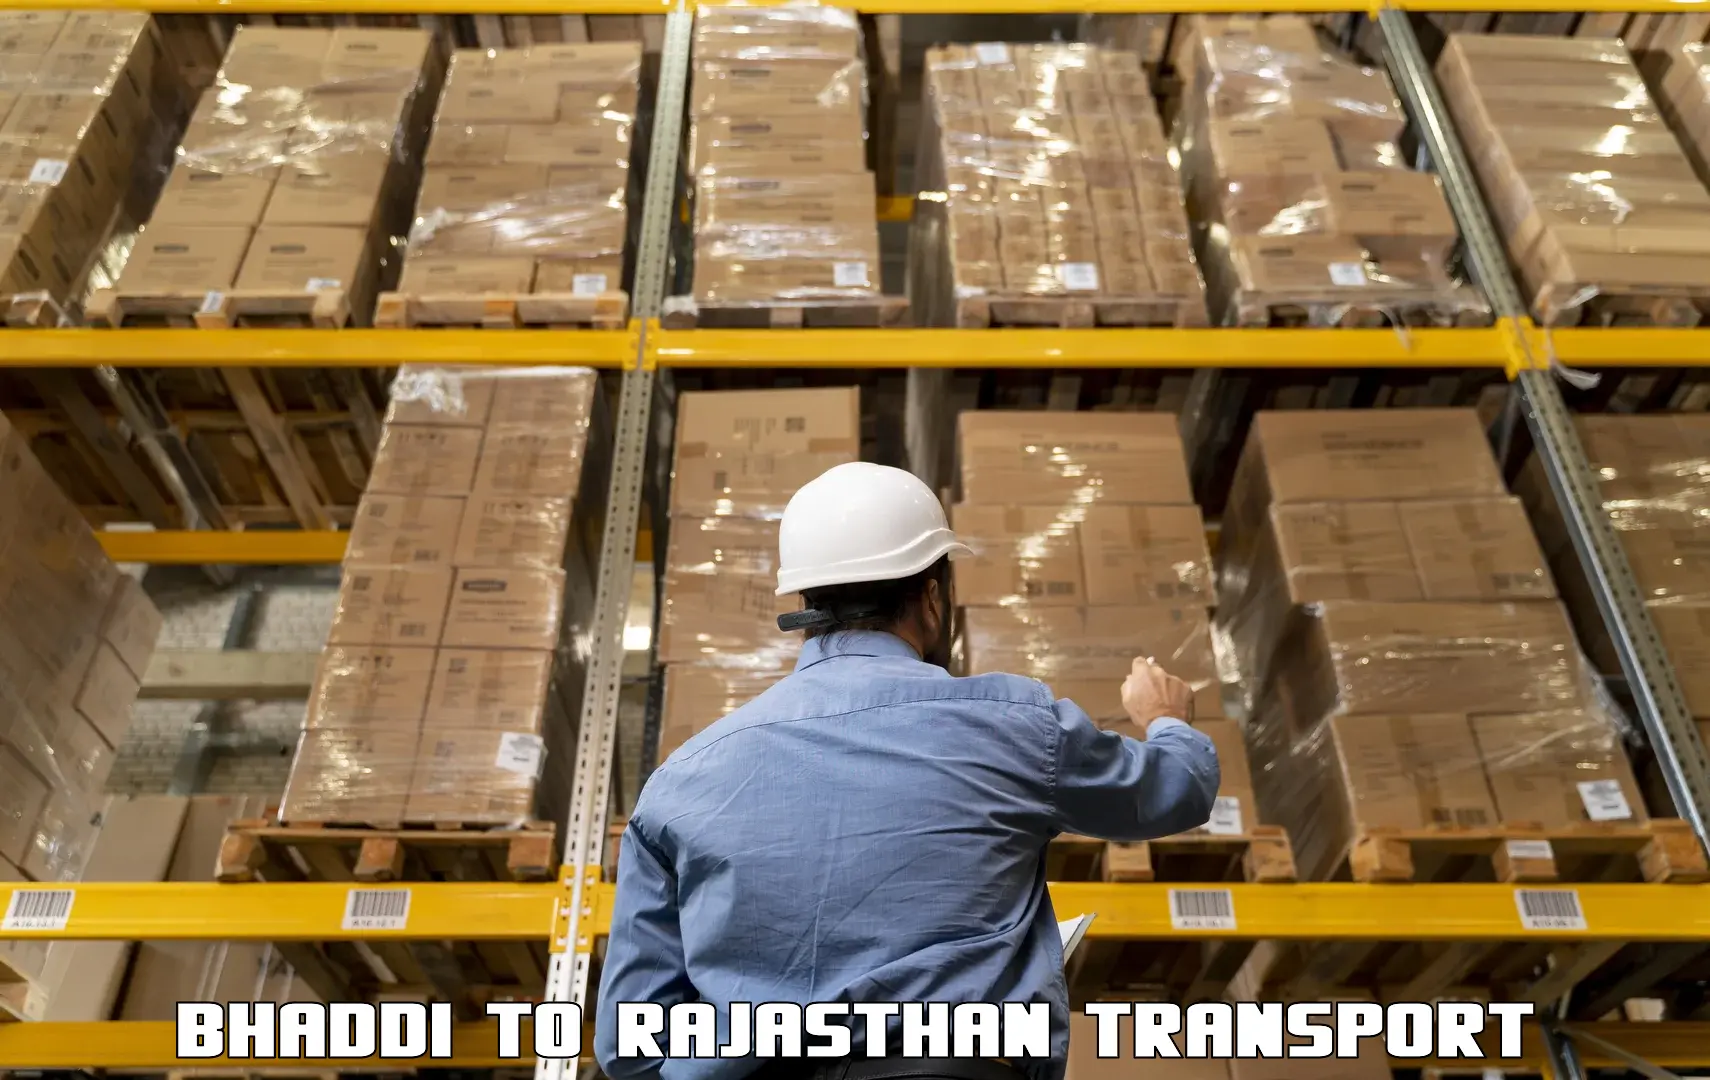 Part load transport service in India Bhaddi to Sri Vijaynagar